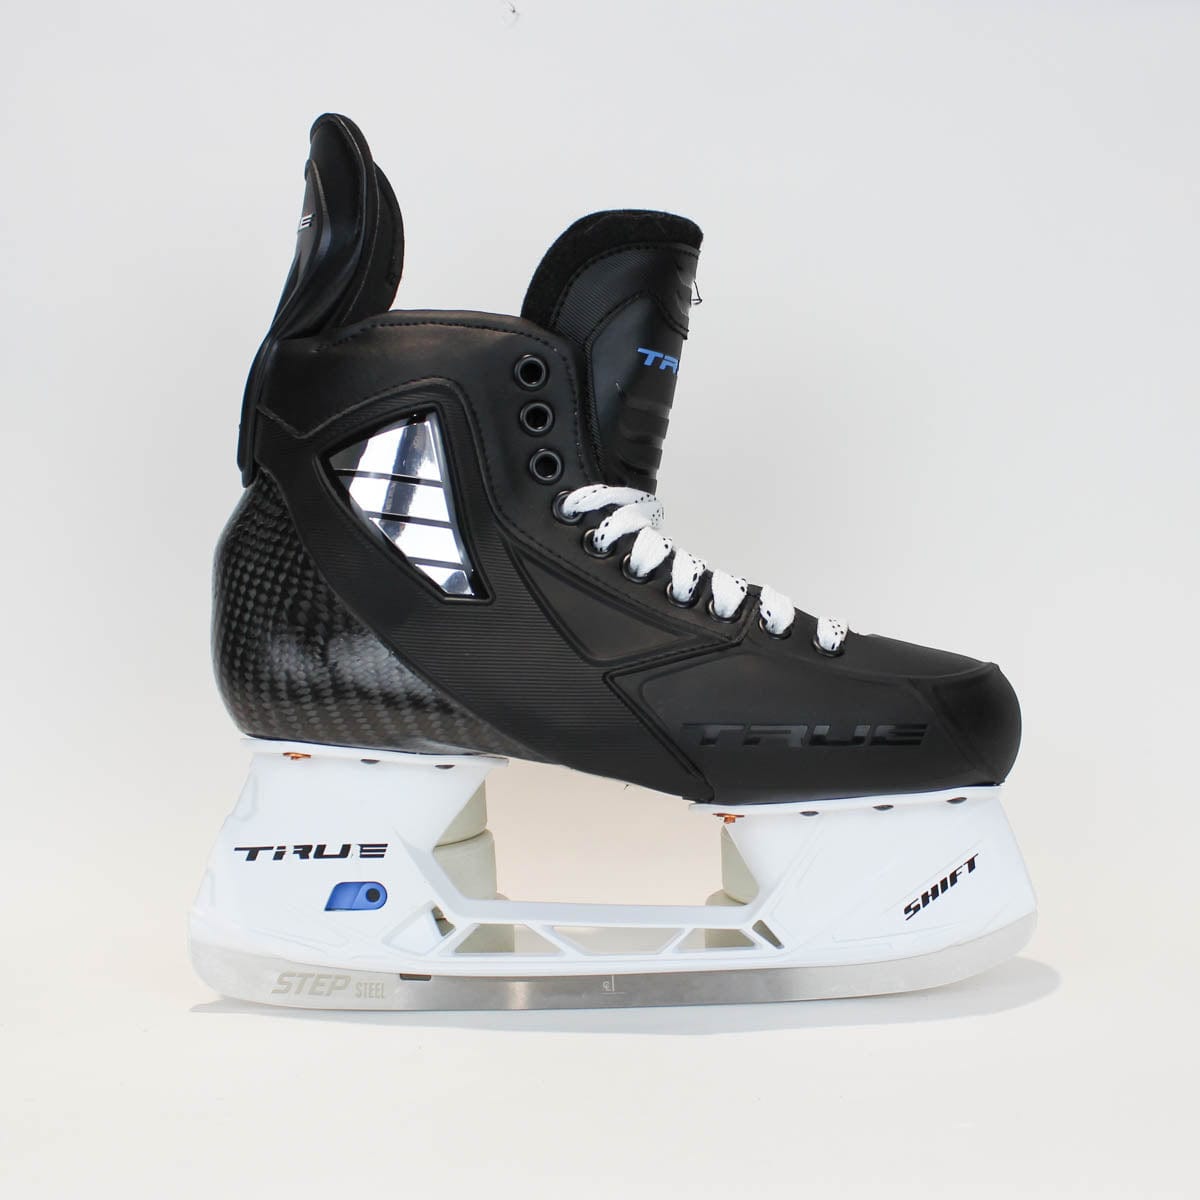 TRUE Player Senior Hockey Skates - Pro Stock - Shift Holder - Size 8